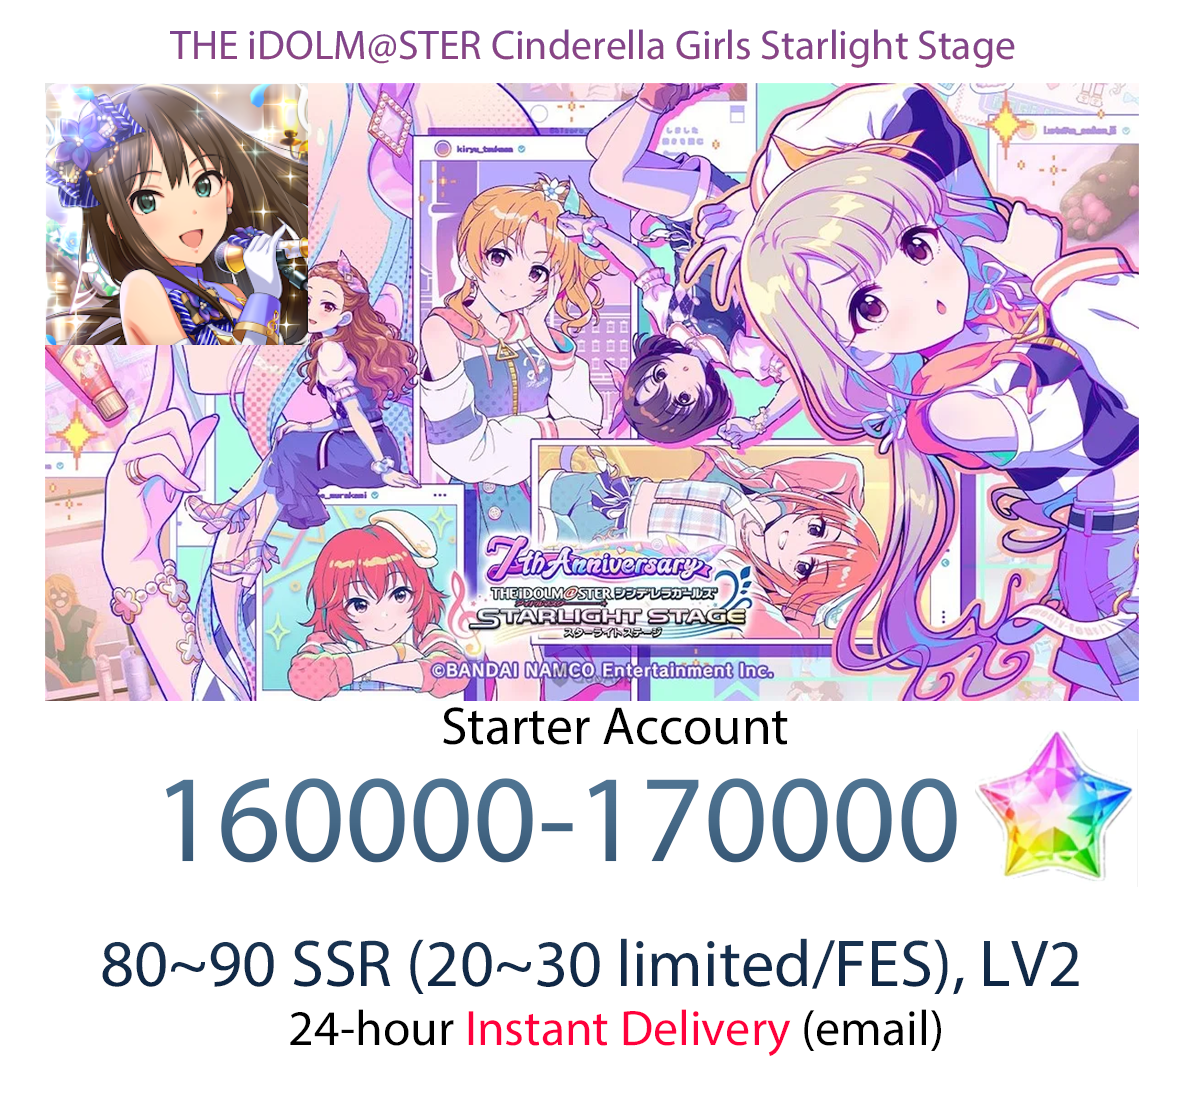 [JP] [INSTANT] Star Jewel Idolmaster Cinderella Girls Starlight Stage iDOLM@STER Deresute Gems Starter Account